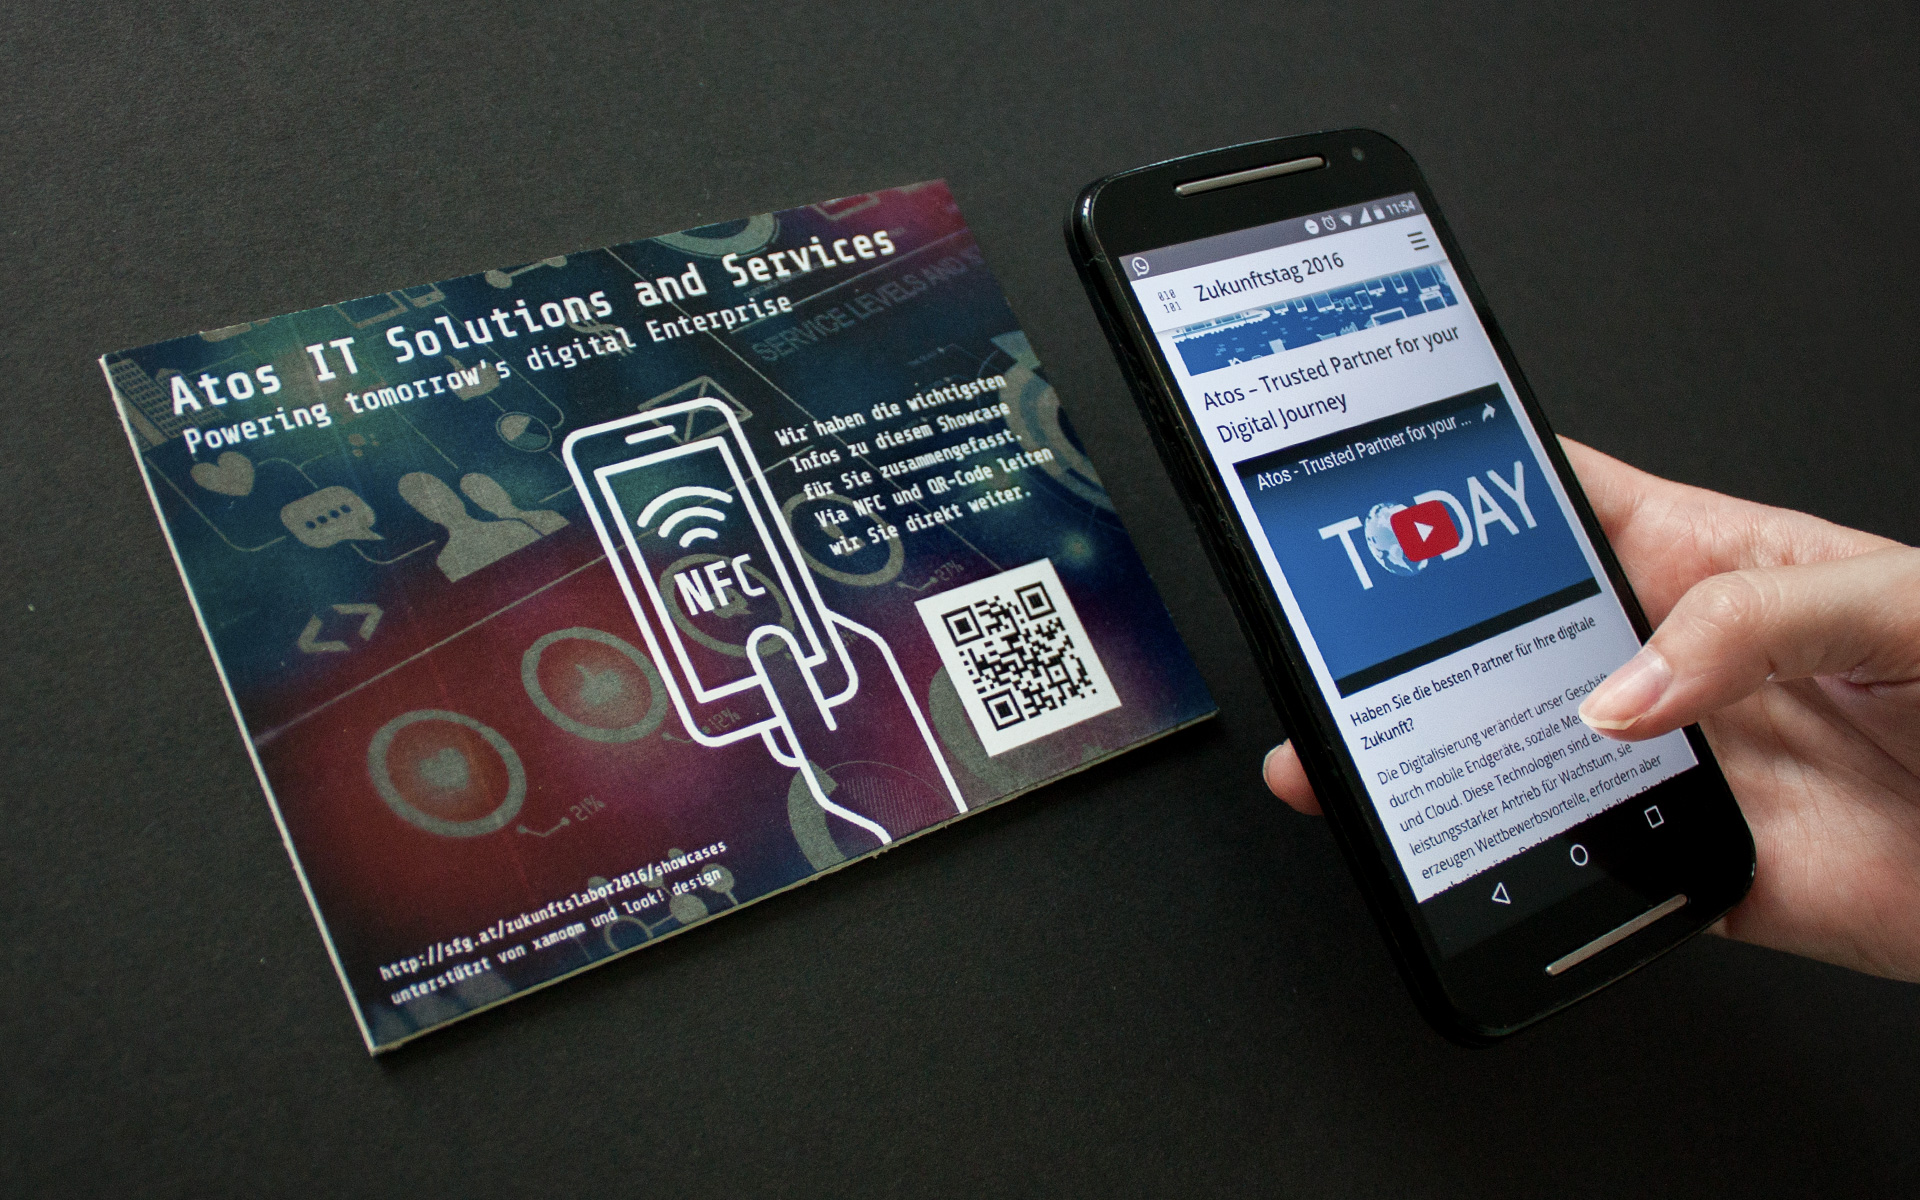 Informationen können mit dem Handy via NFC oder QR-Code erhalten werden